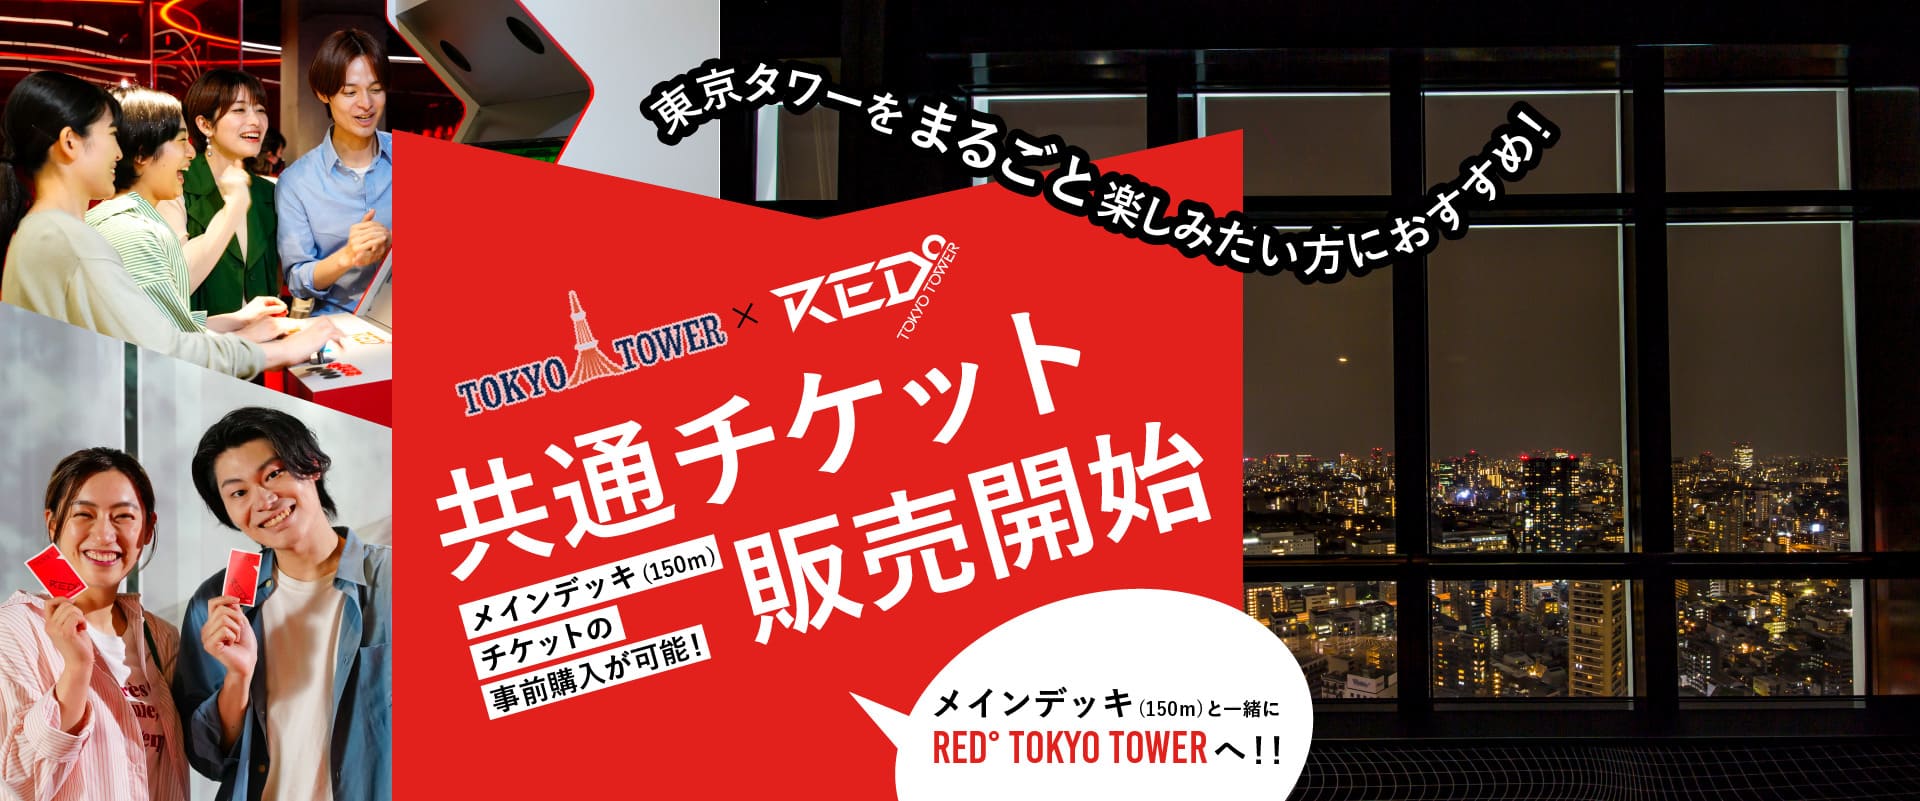 東京タワー×RED° TOKYO TOWER共通チケット販売開始